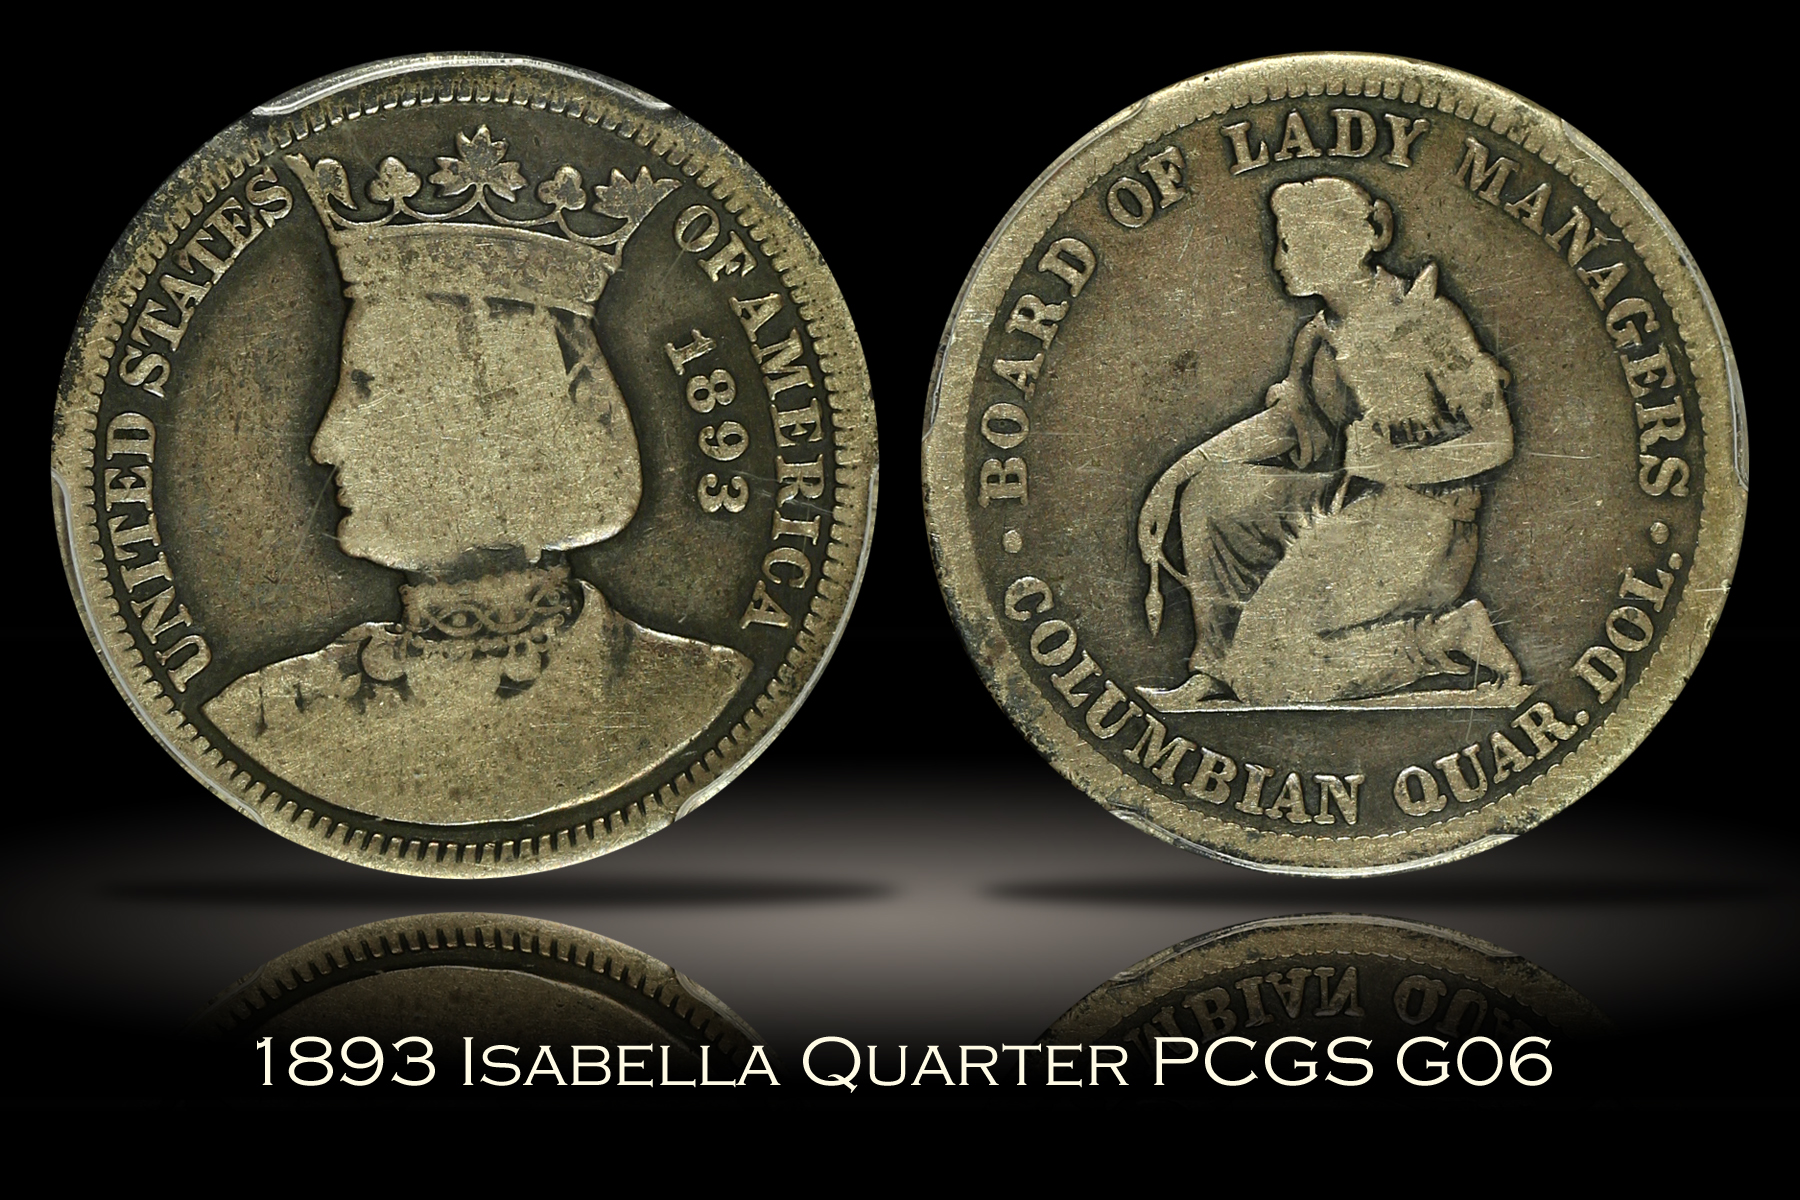 1893 Isabella Quarter PCGS G06